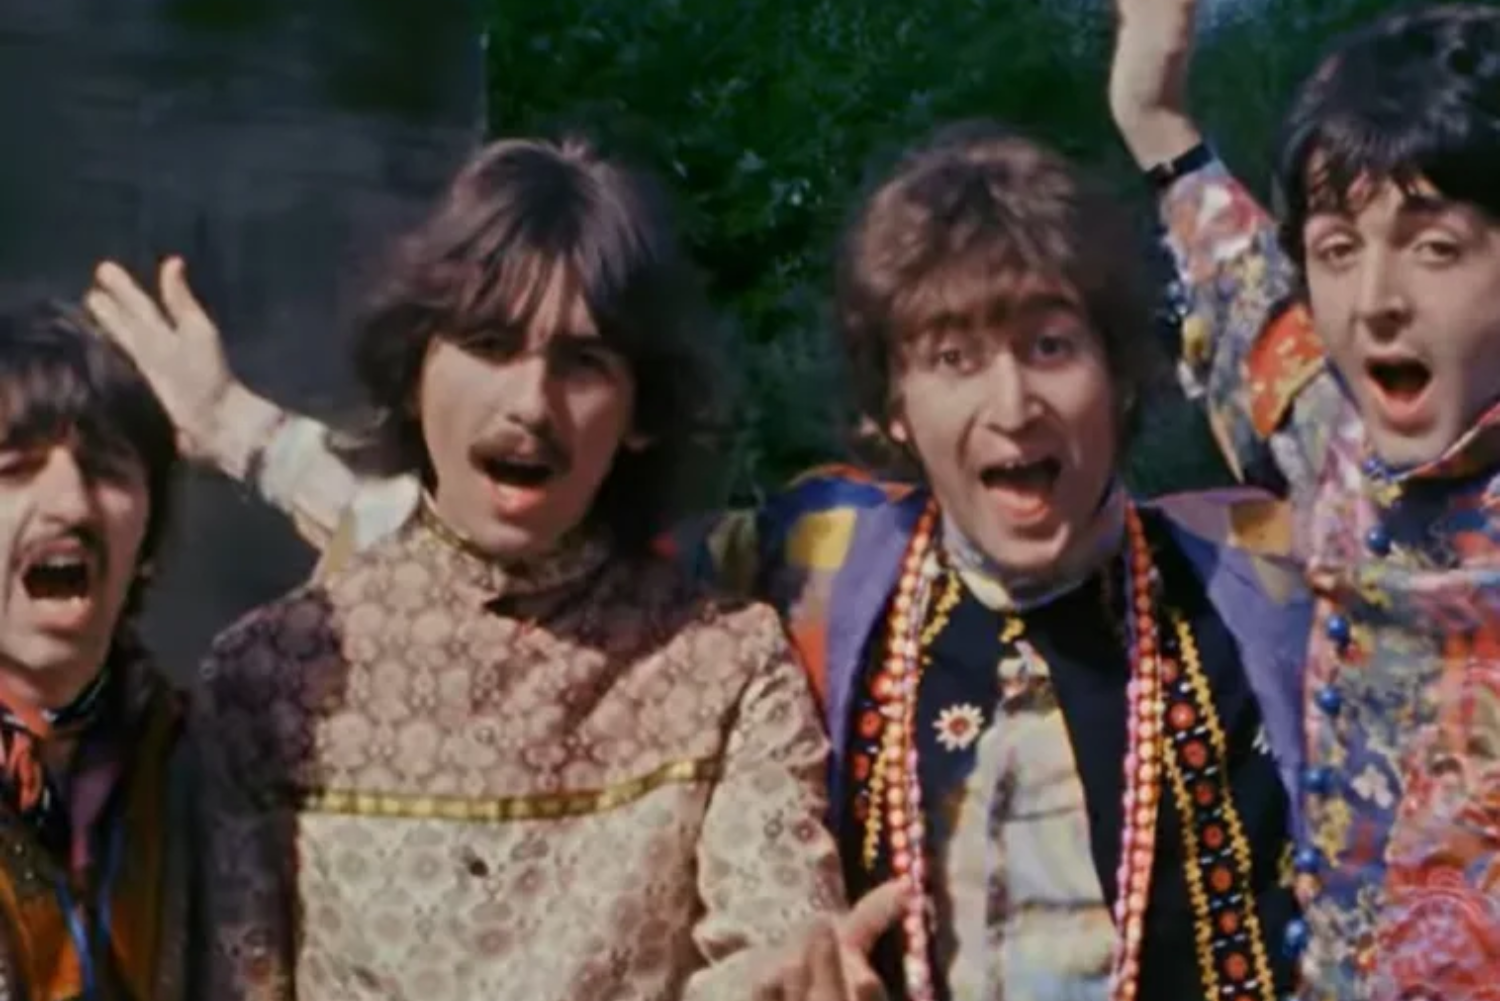 O emocionante clipe da nova música que reúne os Beatles pela